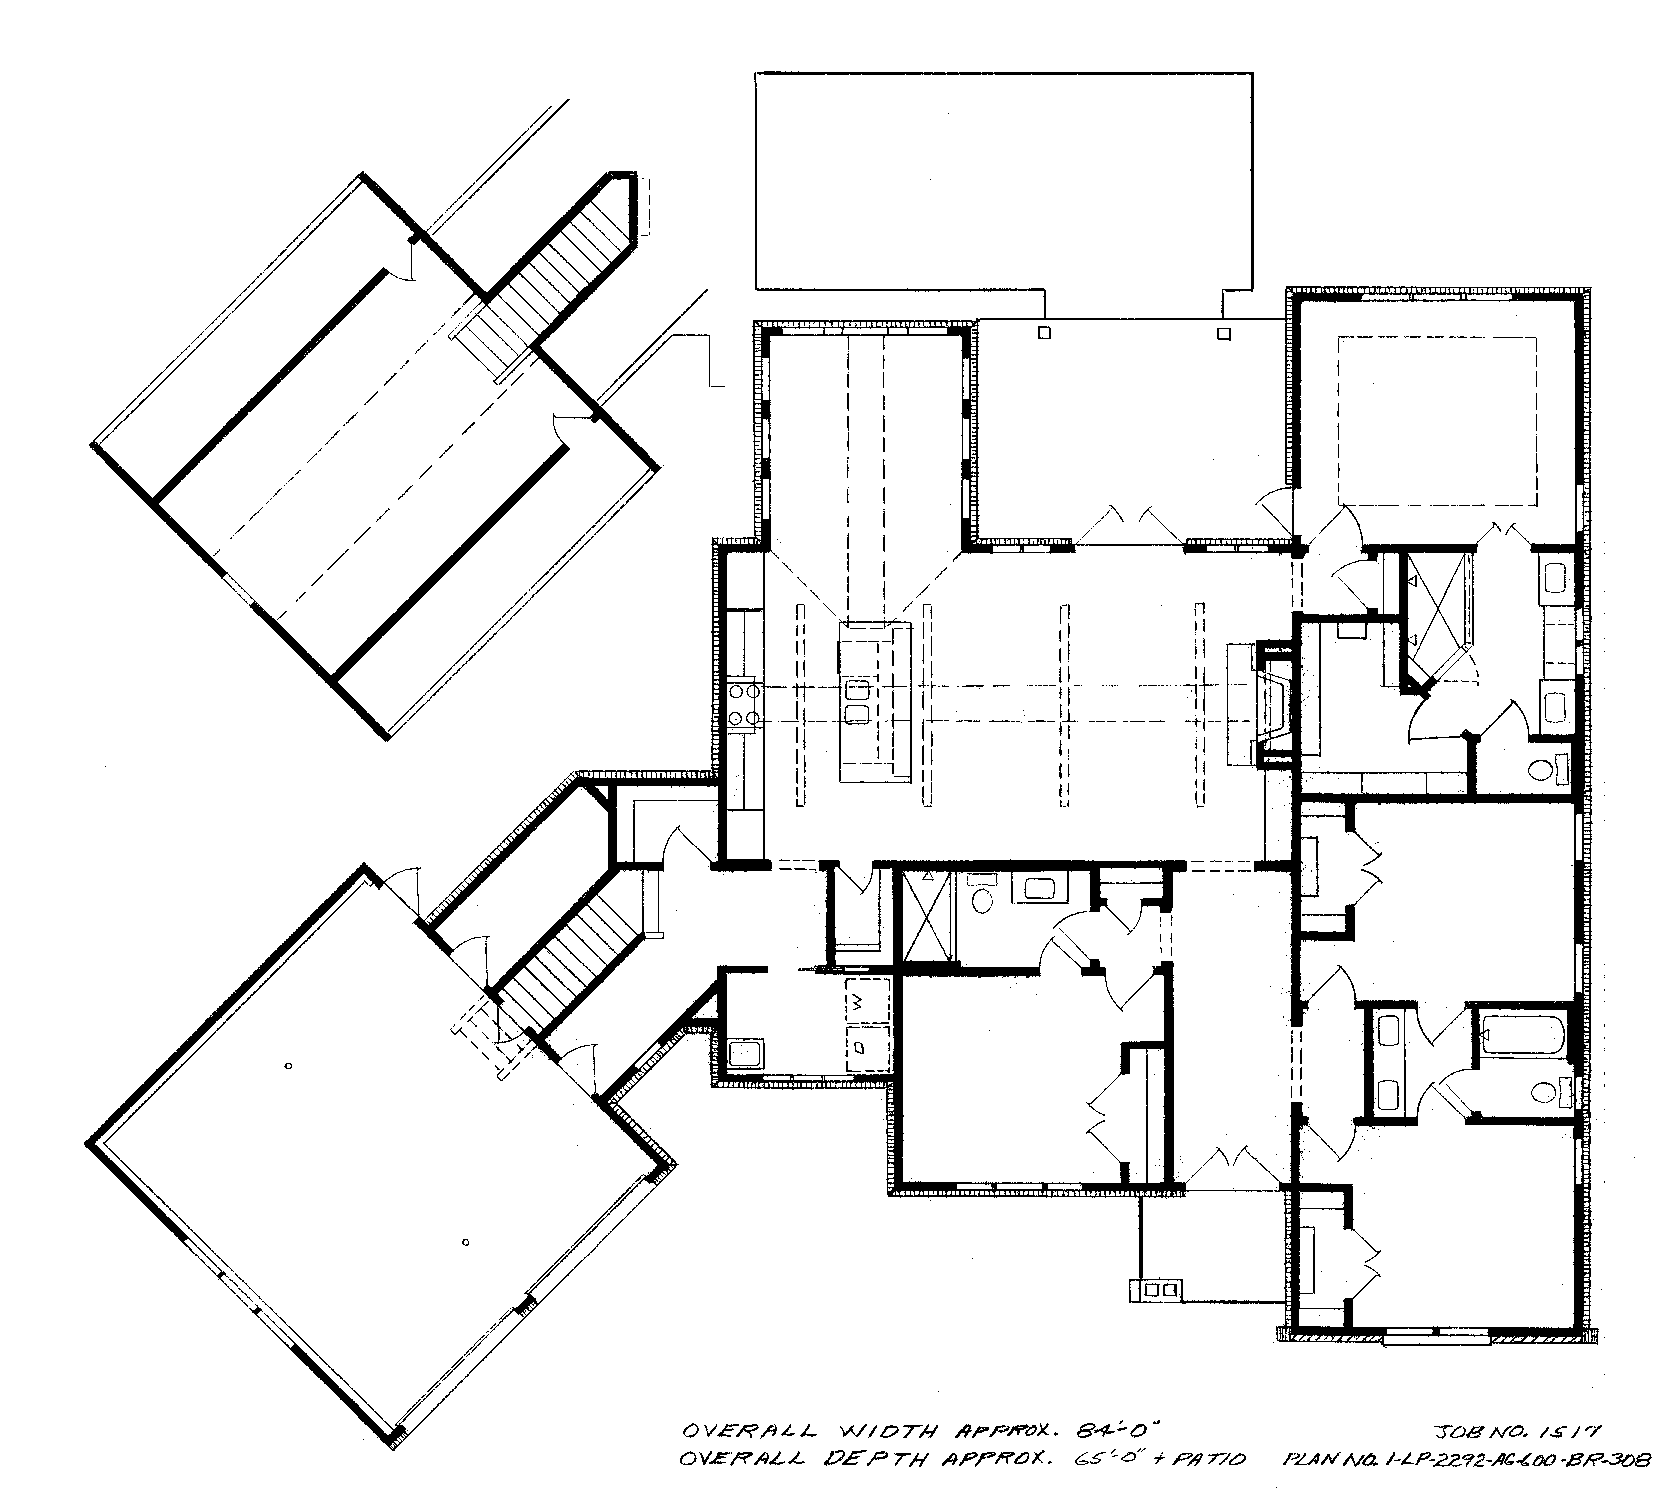 resized-brochure-floor-plan-1517.png